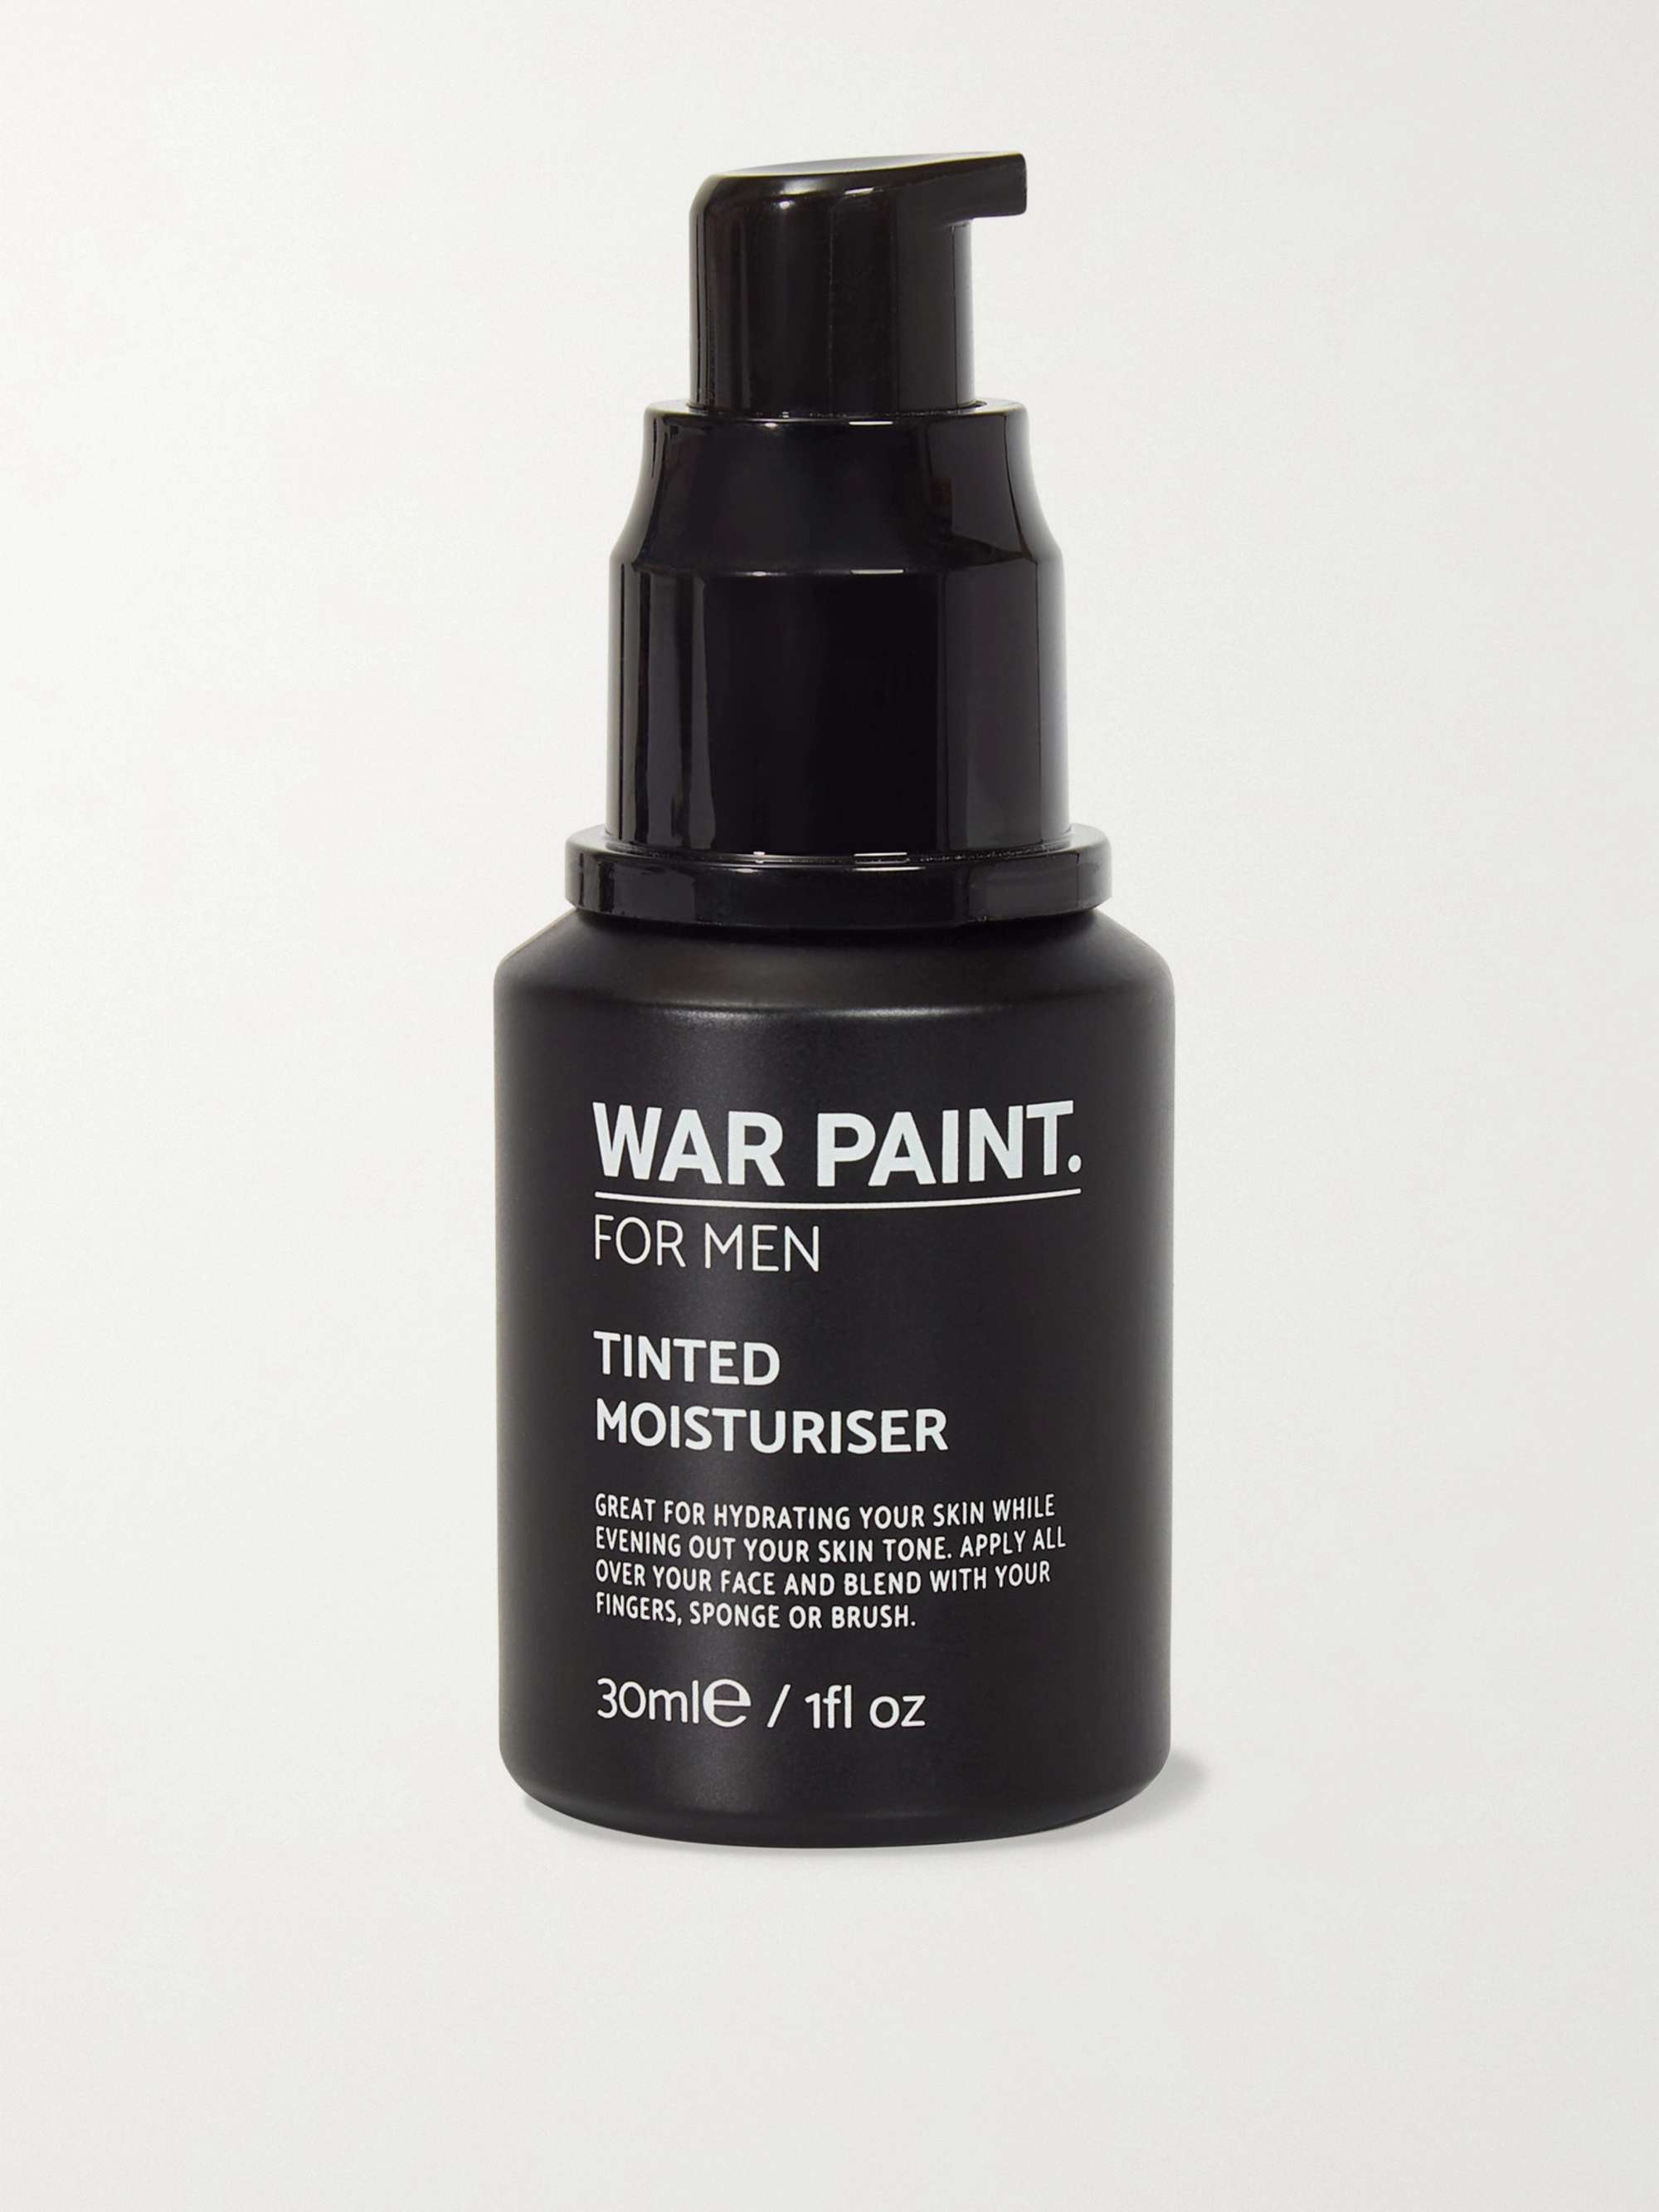 WAR PAINT FOR MEN Tinted Moisturiser - Medium, 30ml